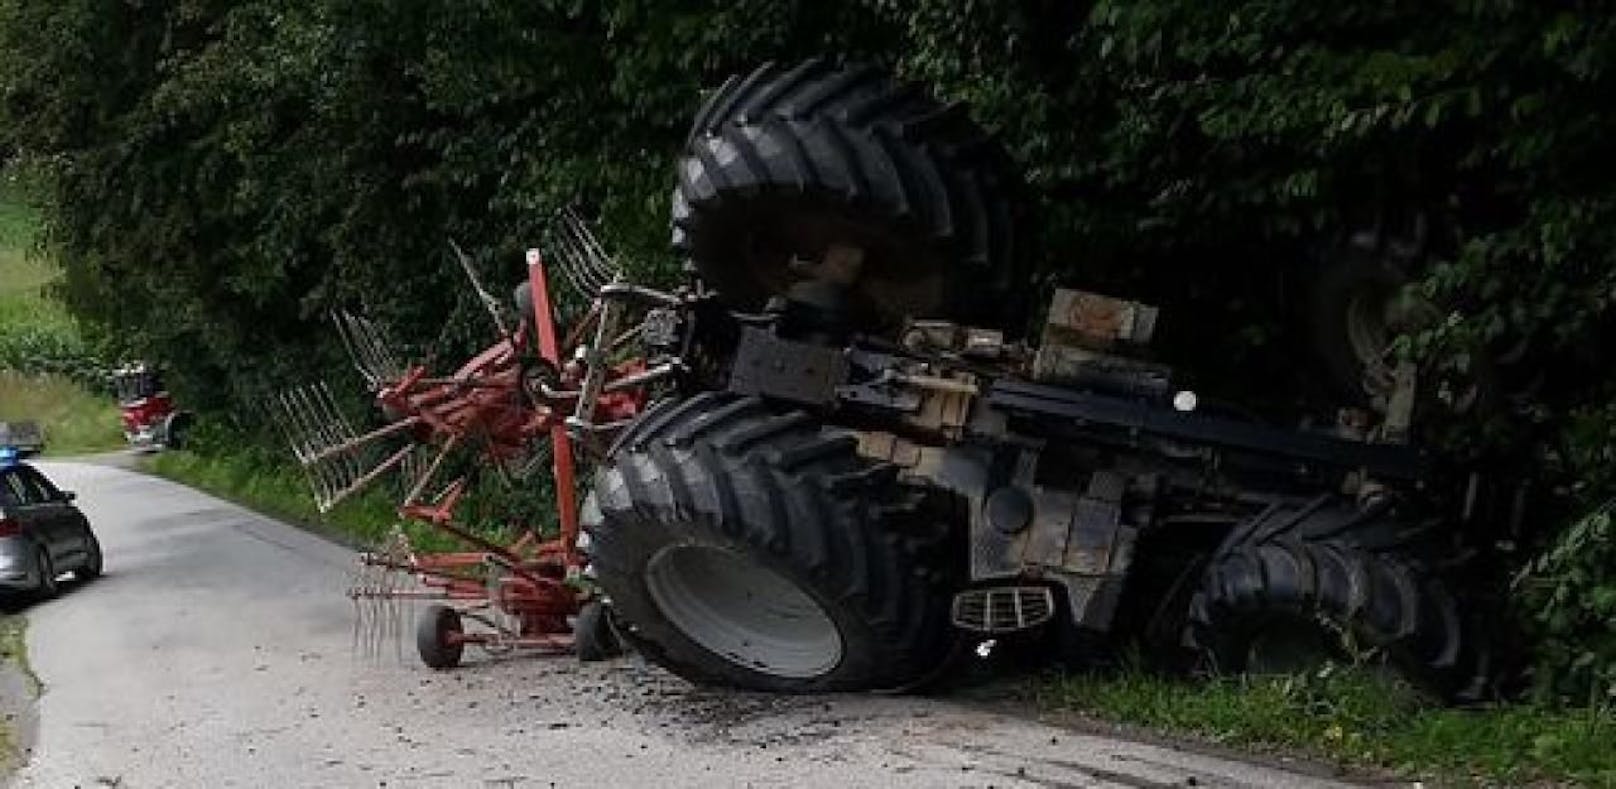 Crash verhindert, Lenker unter Traktor eingeklemmt